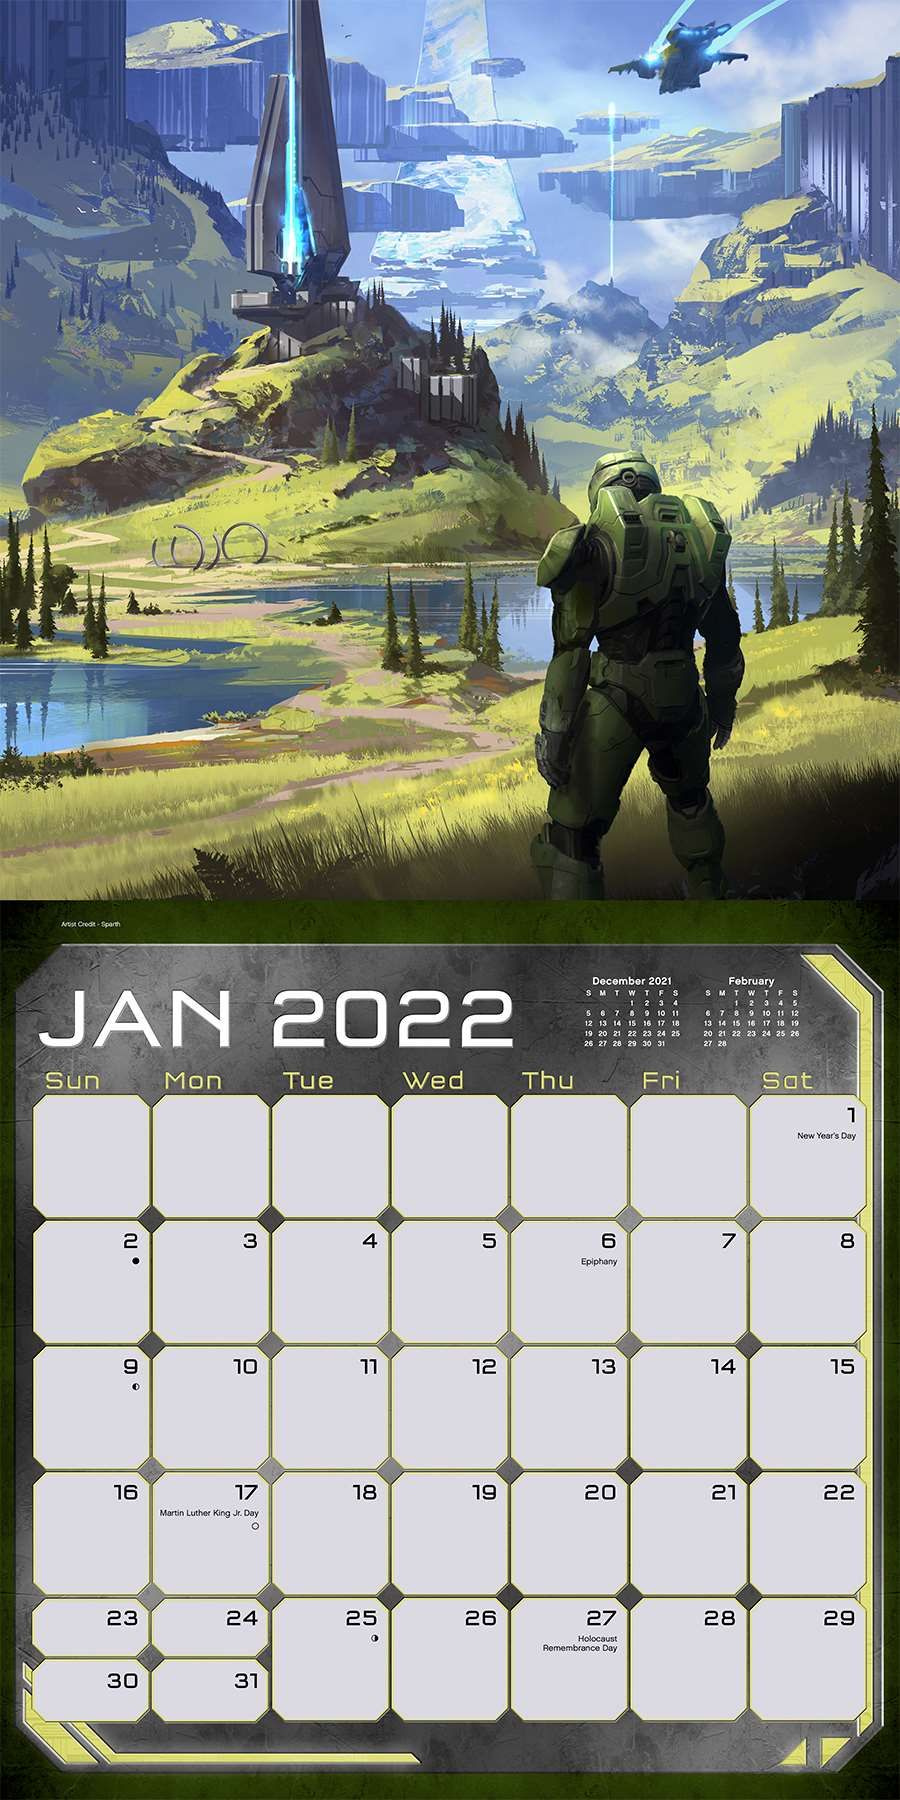 Halo Infinite 2022 Calendar Reveals Never Before Seen Artwork Xbox News